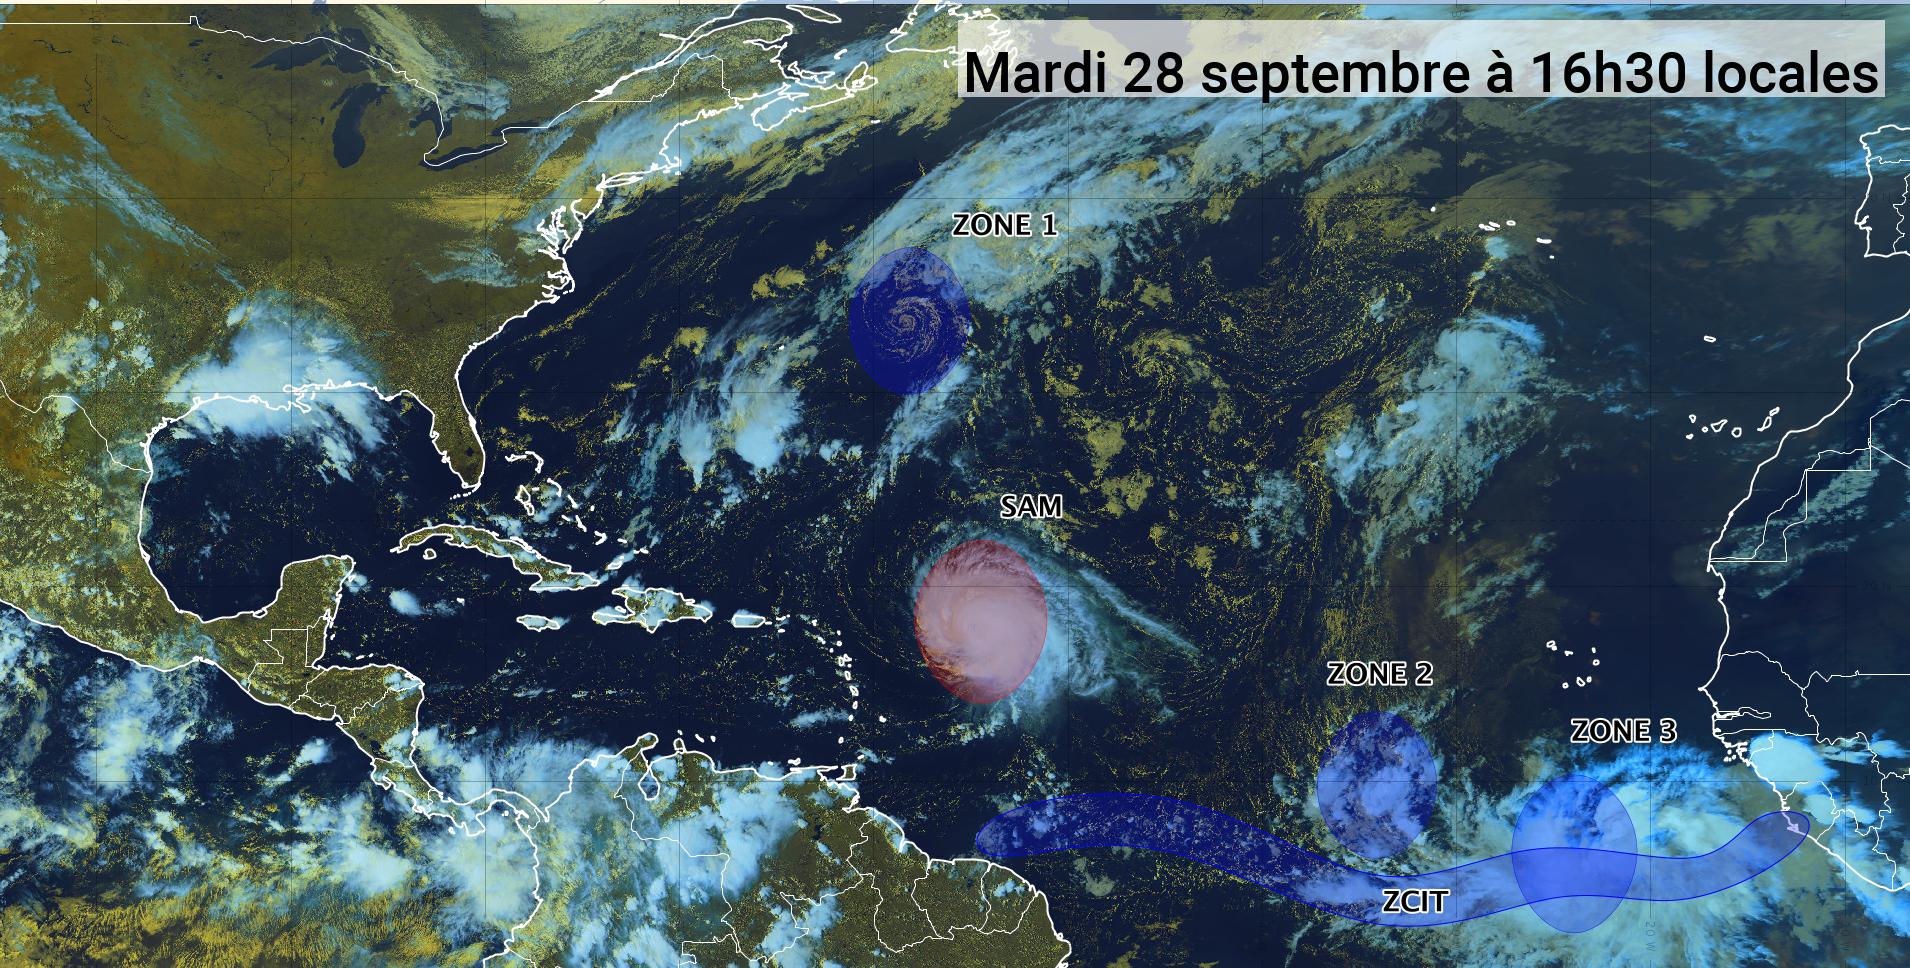     L'ouragan Sam revient en catégorie 4 et trois zones sont sous surveillance (bulletin du 28/09/21)

